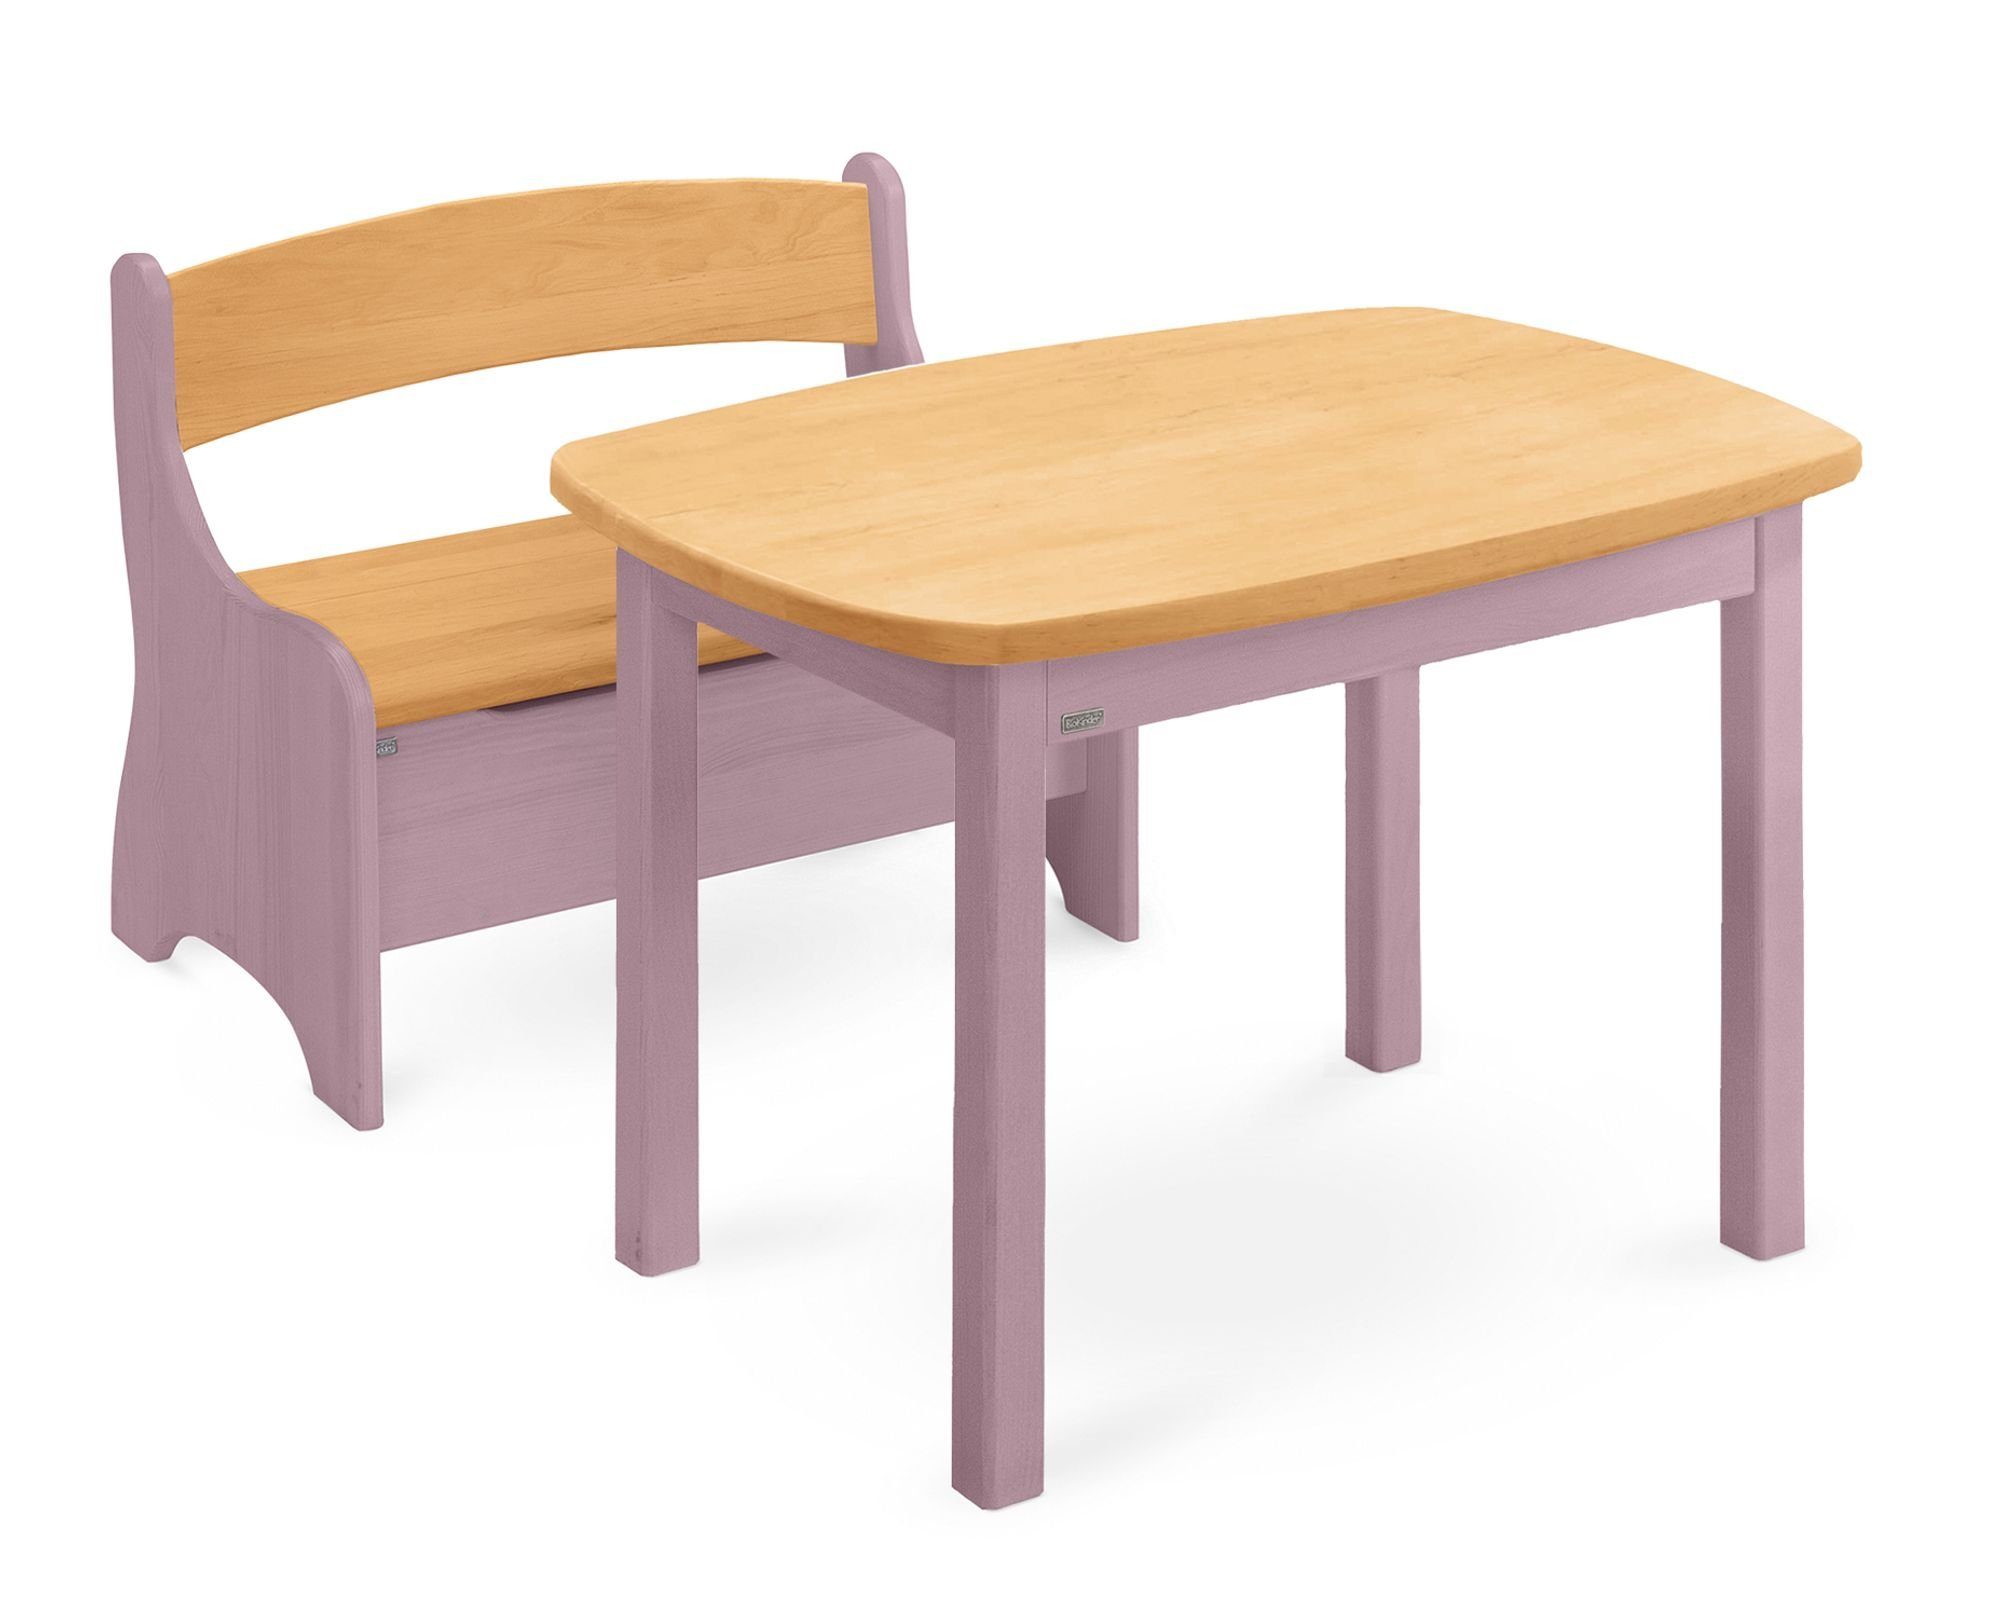 BioKinder - Das gesunde Kinderzimmer Kindersitzgruppe Levin, mit Tisch und Sitzbank, Sitzhöhe 30 cm